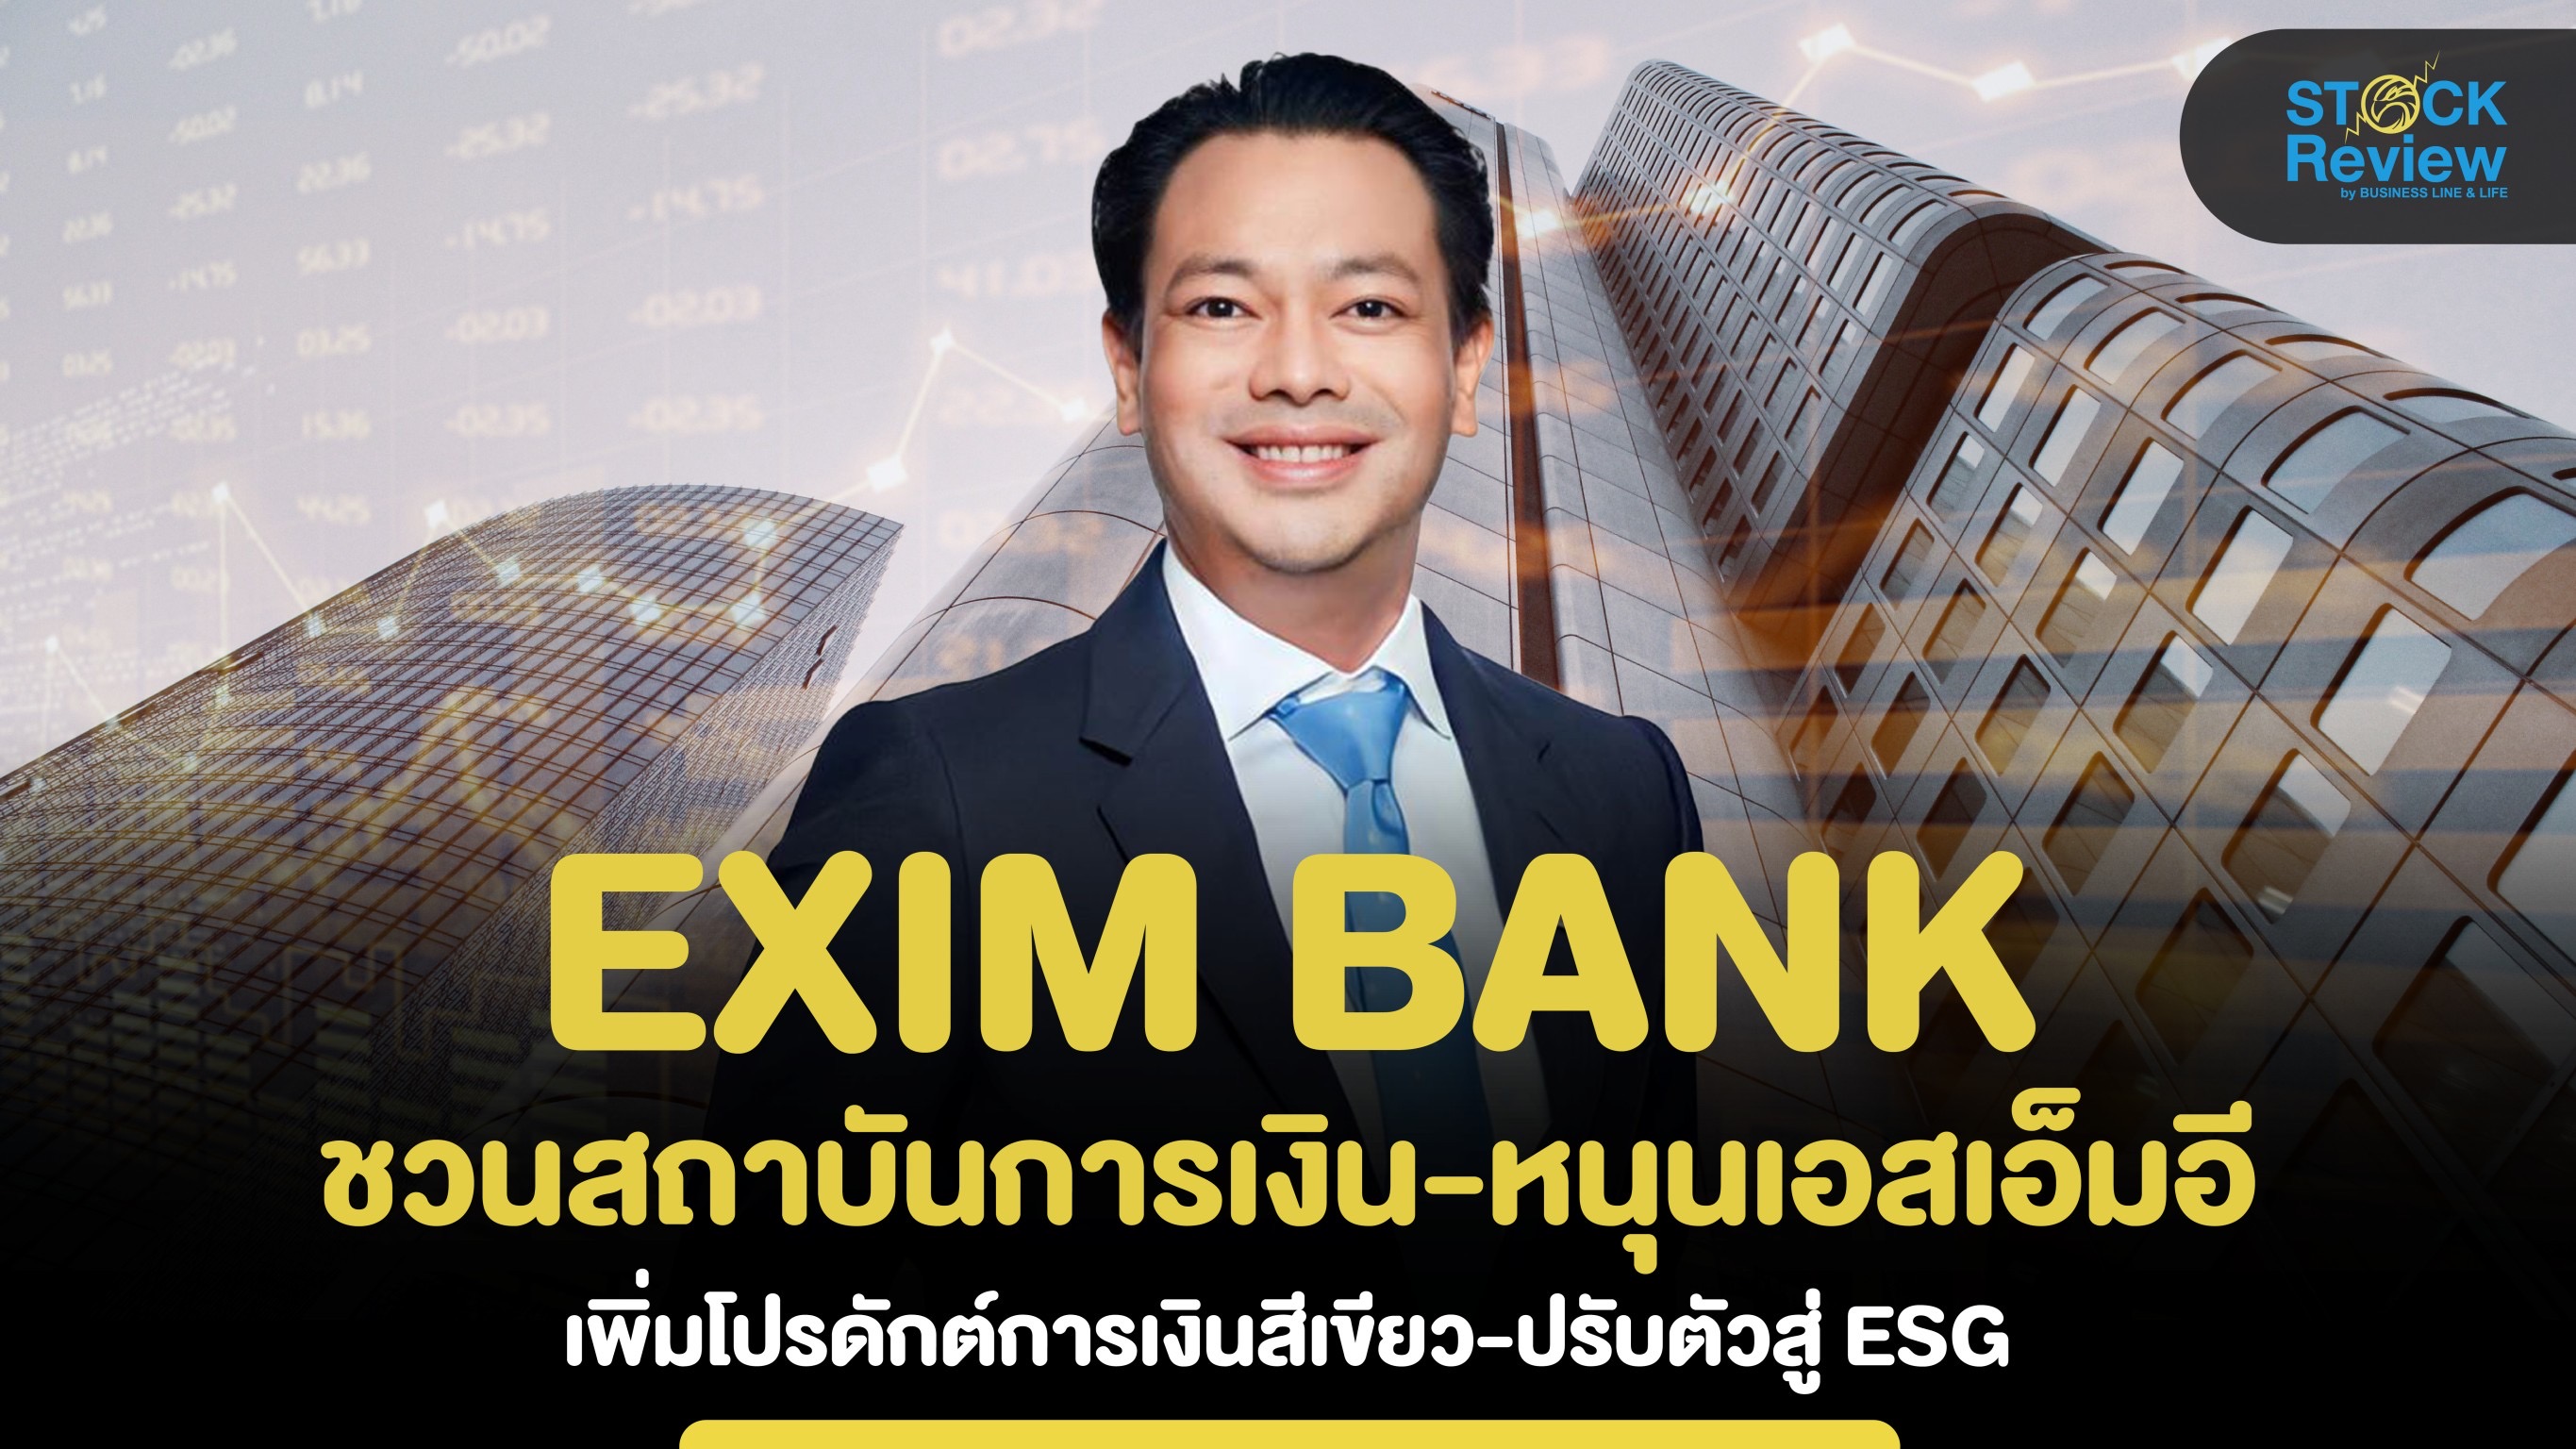 EXIM BANK ชวนสถาบันการเงิน หนุนเอสเอ็มอีไทย ออกผลิตภัณฑ์สีเขียว